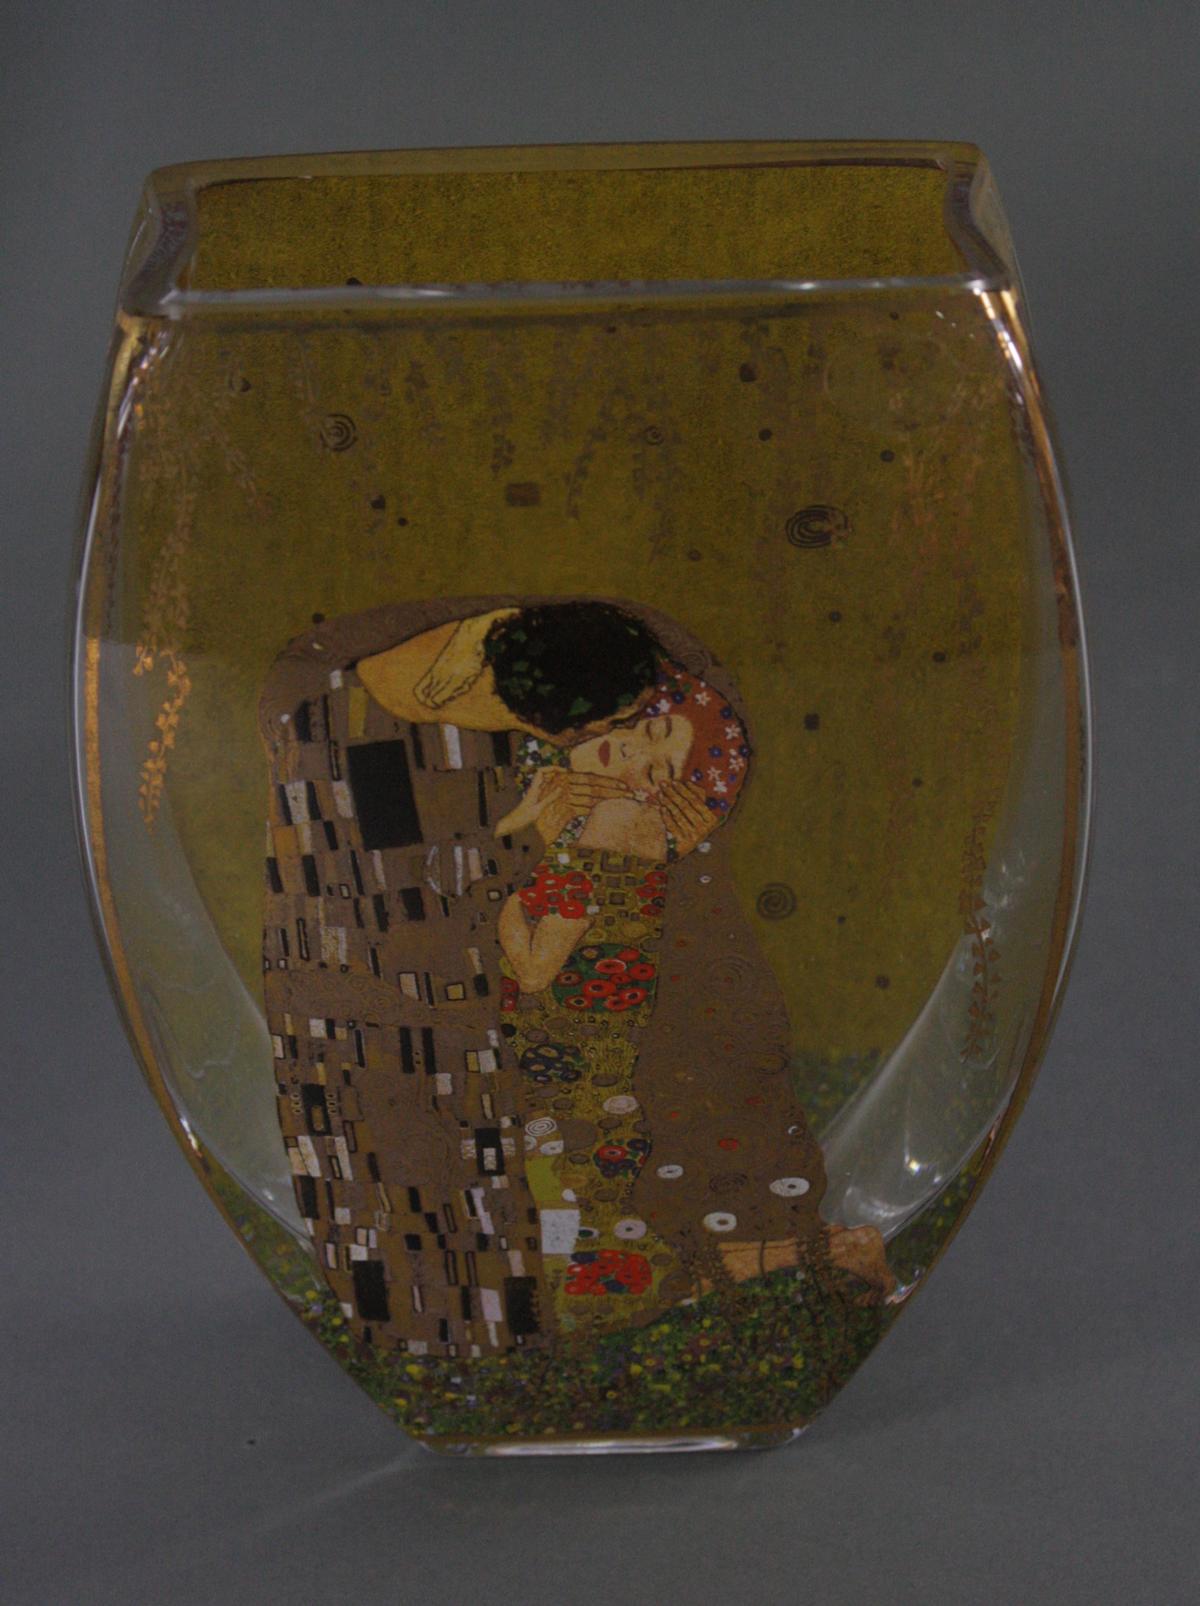 Zwei Goebel Artis Orbis Gustav Klimt Vasen. Porzellan und Glas - Image 2 of 7